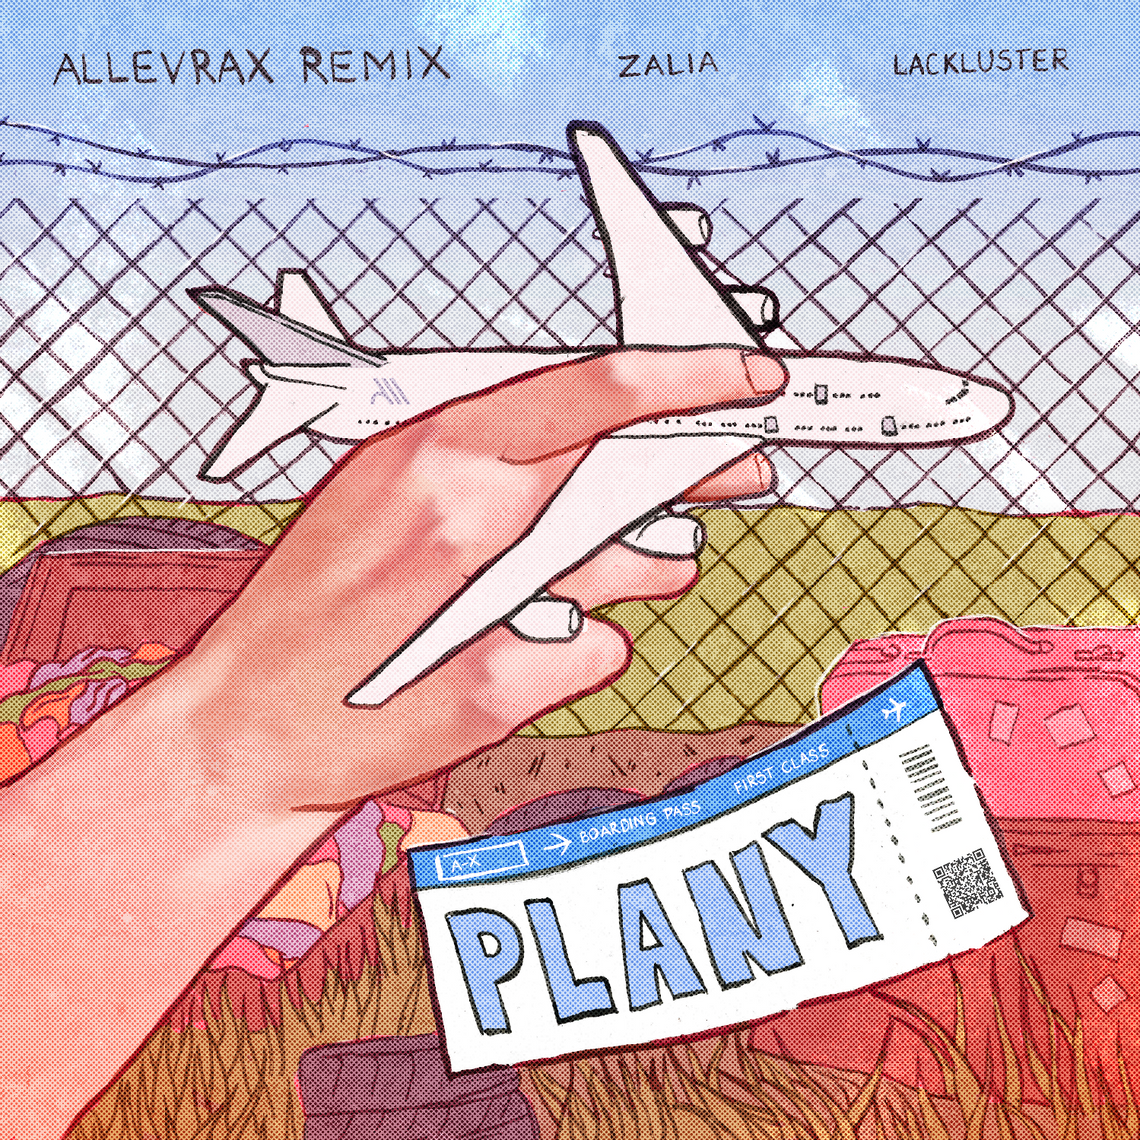 "Plany" Zalii i Lacklustera w nowej odsłonie – remix Allevrax